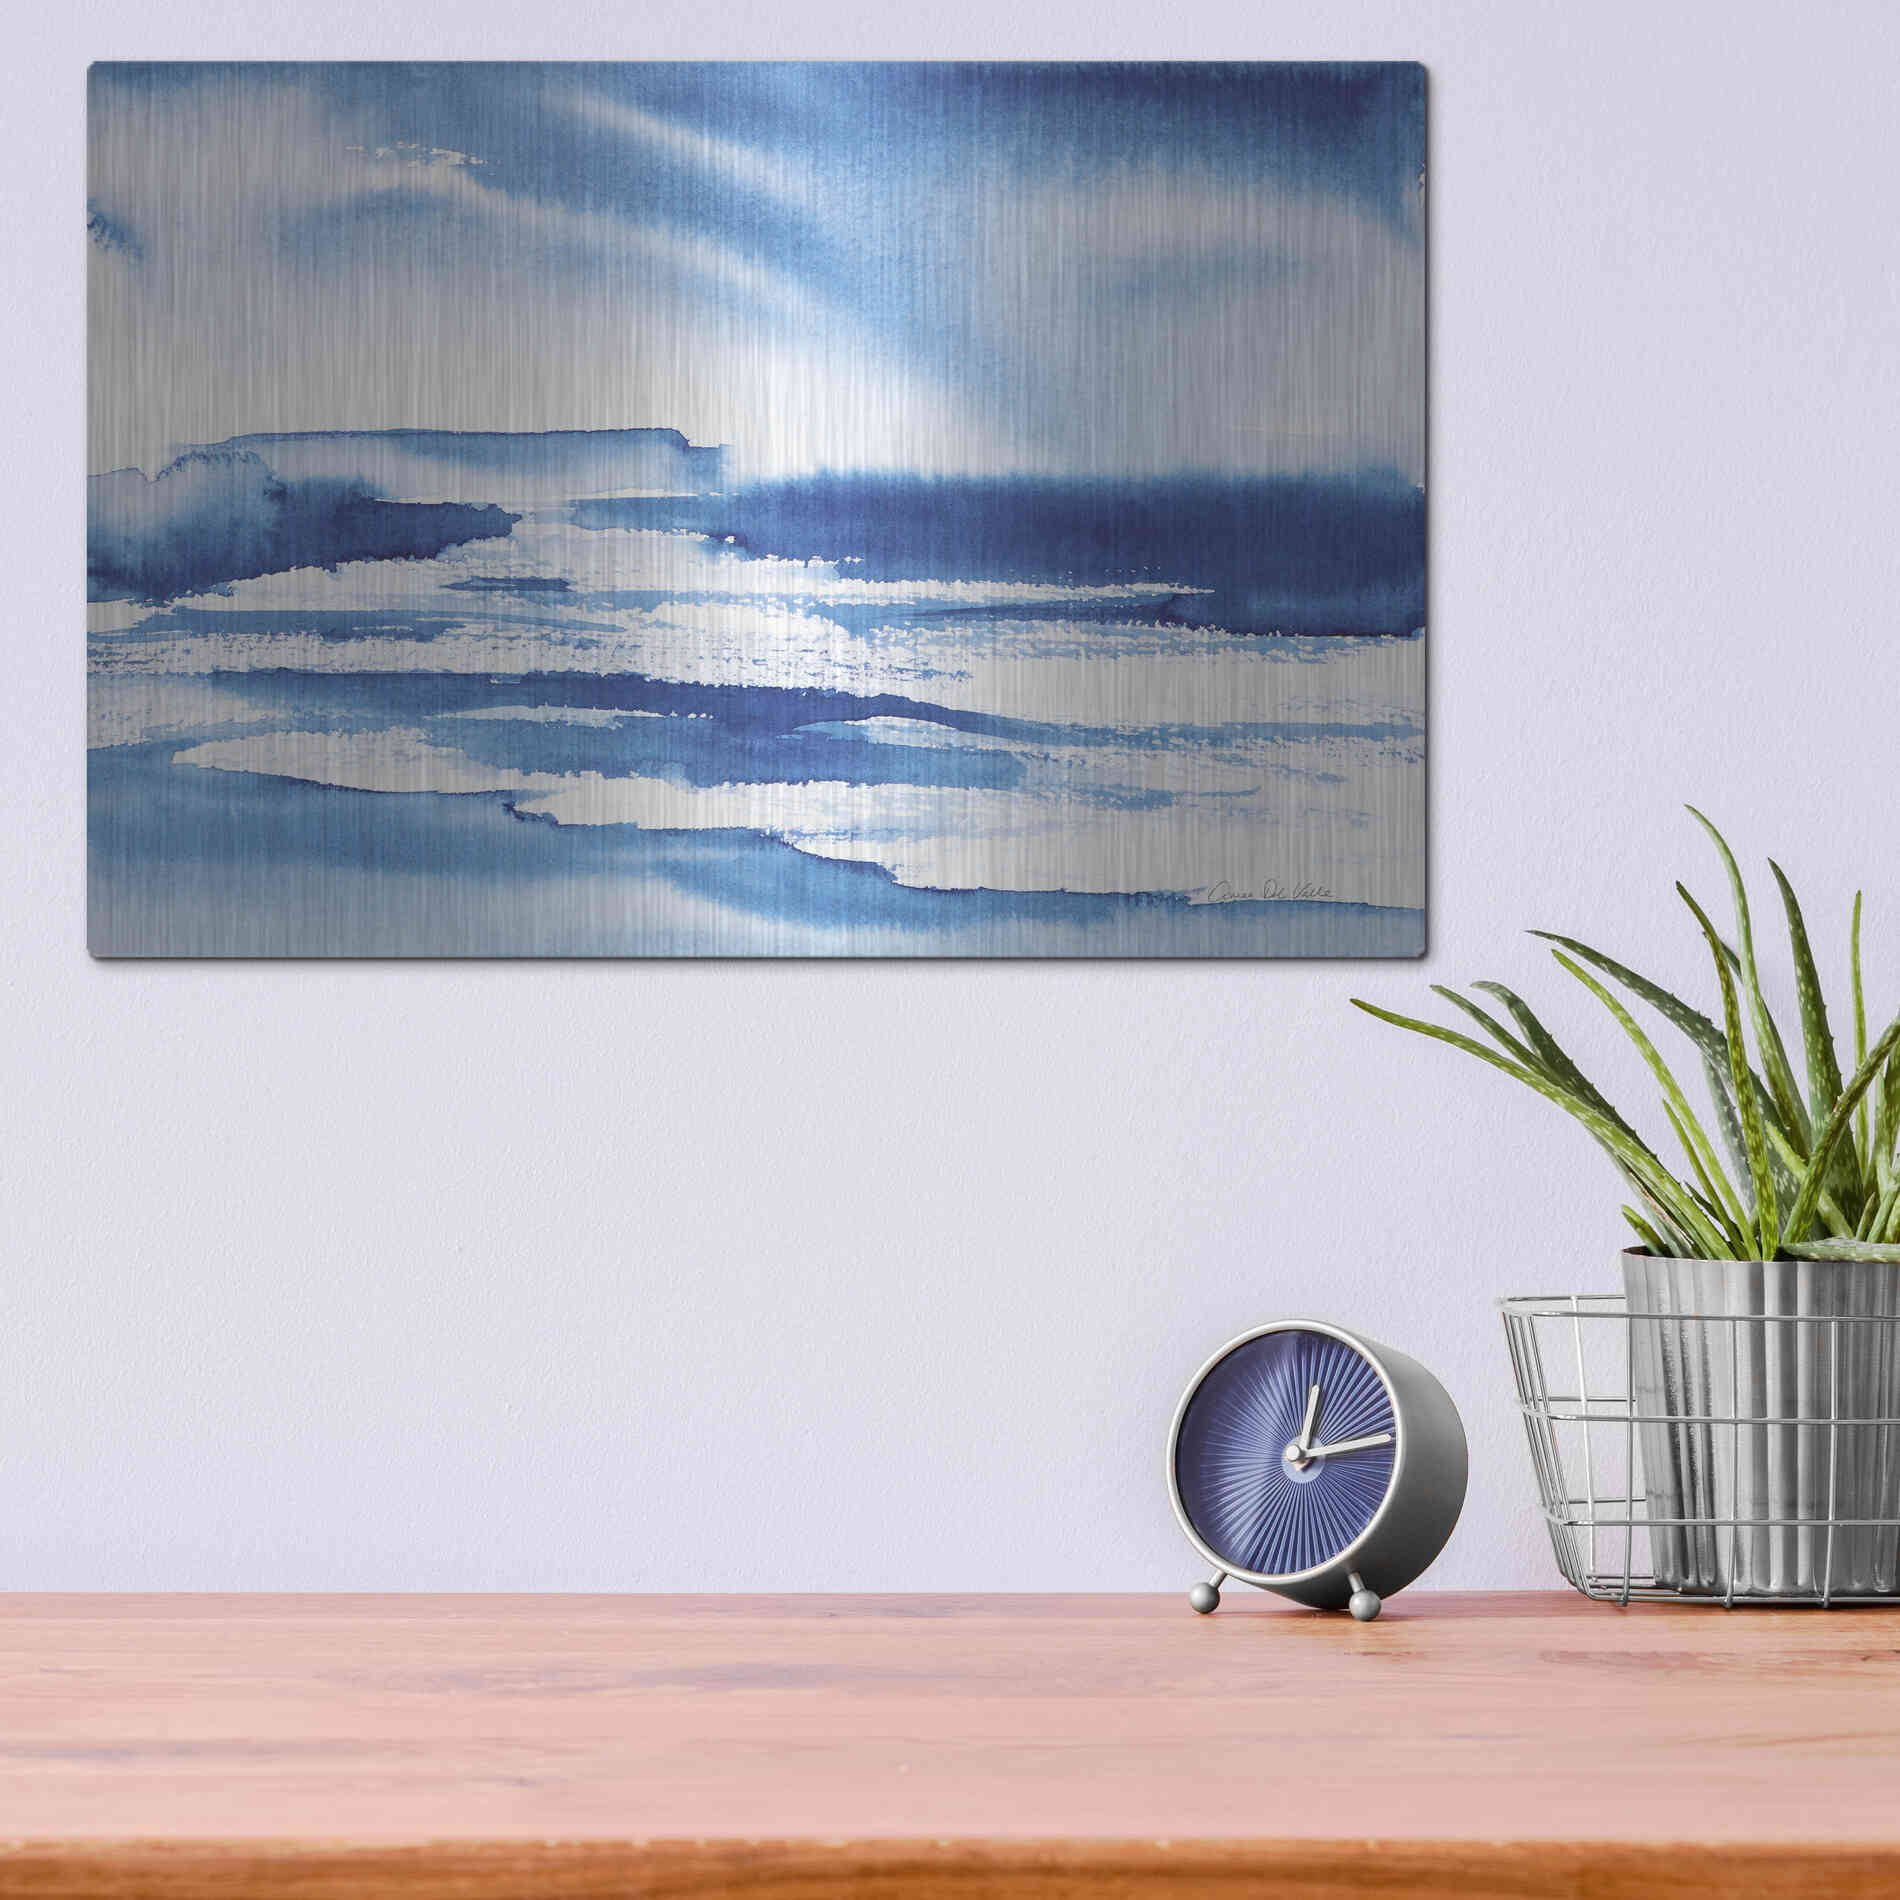 Luxe Metal Art 'Ocean Blue I' by Alan Majchrowicz, Metal Wall Art,16x12